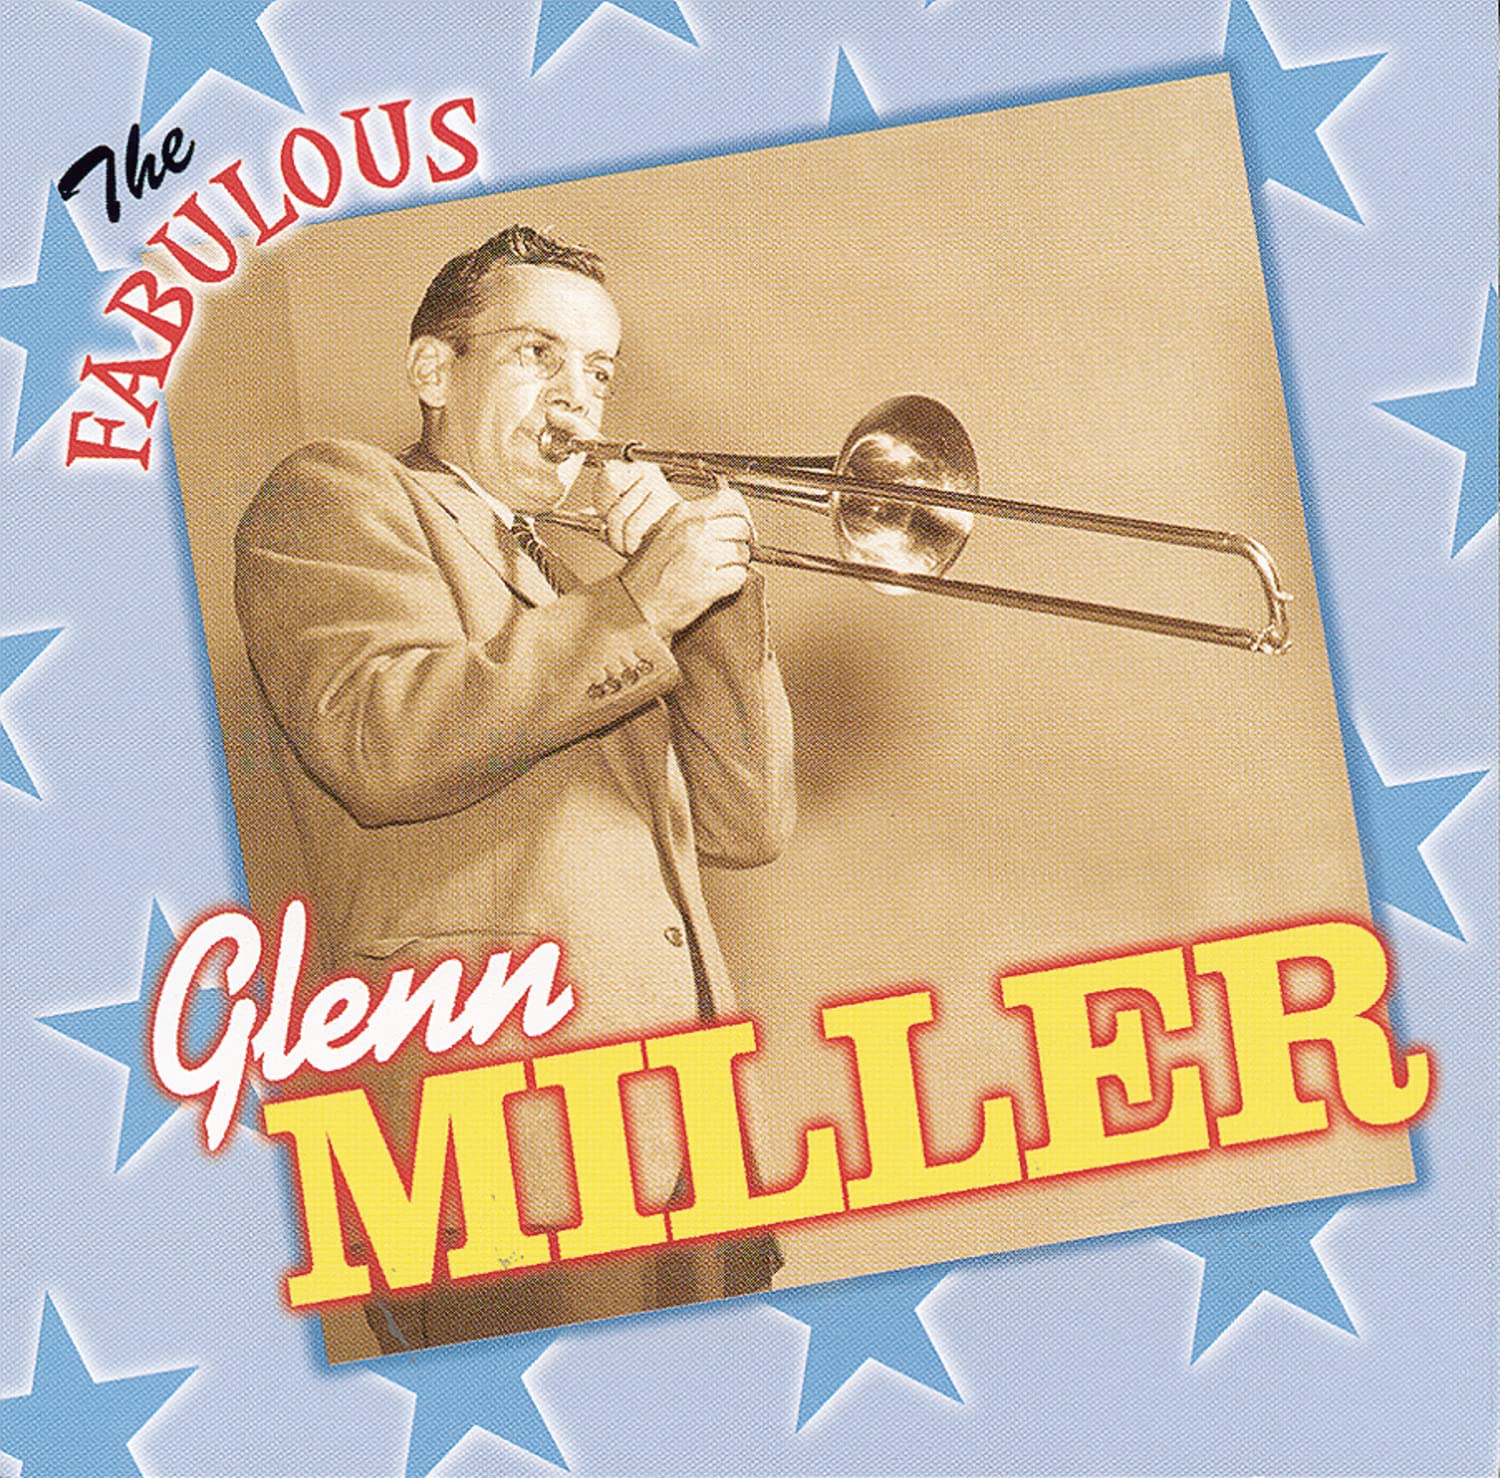 Glen Miller- The Fabulous Glenn Miller